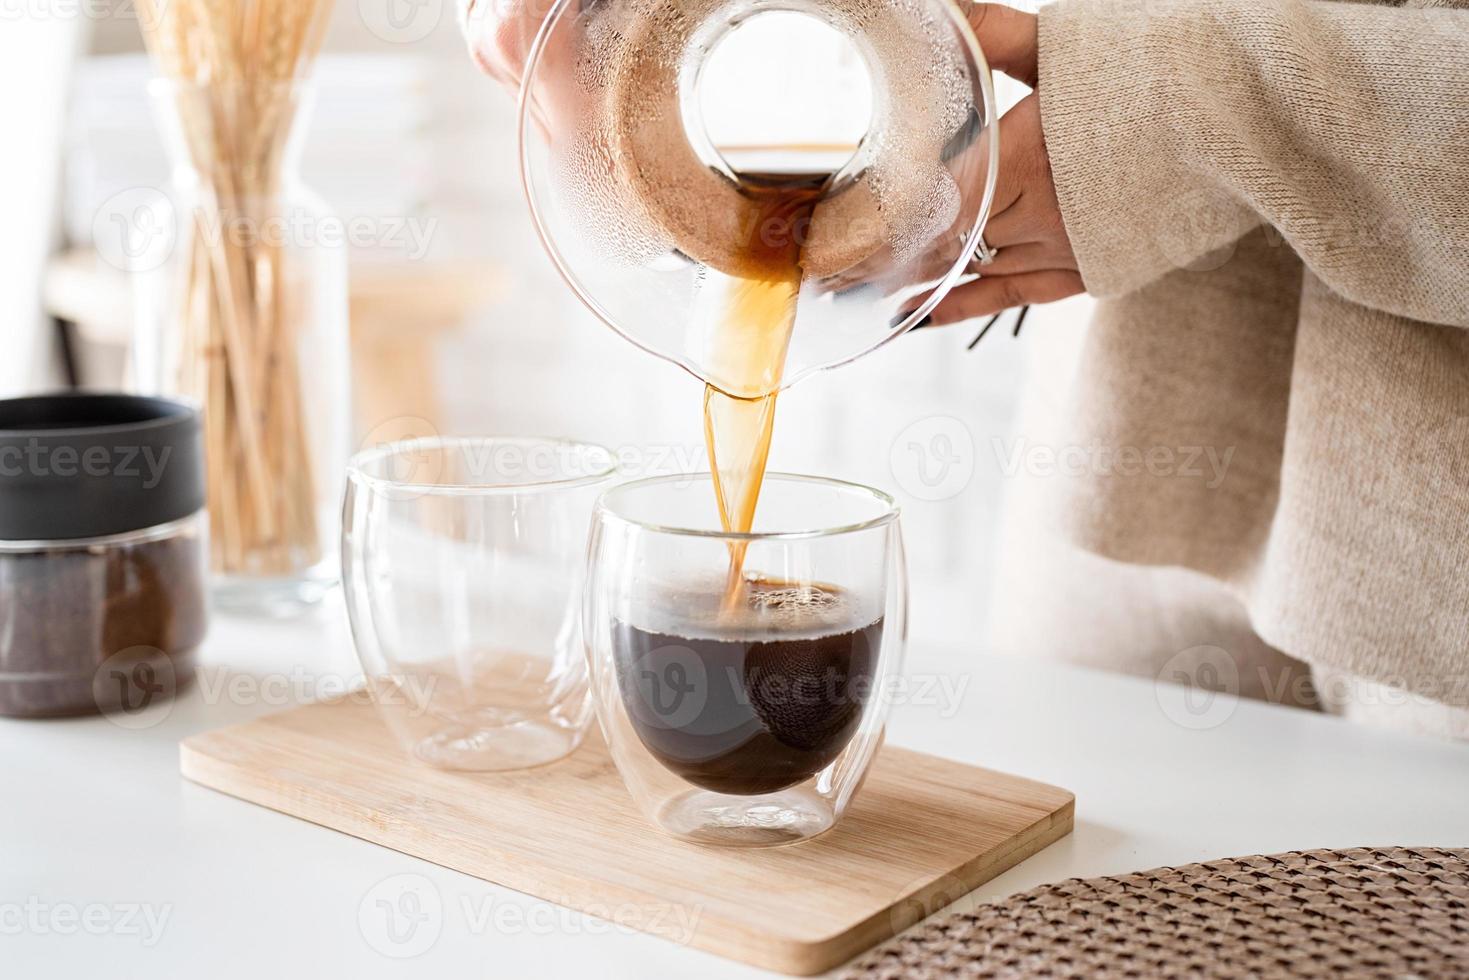 Mujer joven preparando café en una cafetera, vertiendo café en el vaso foto